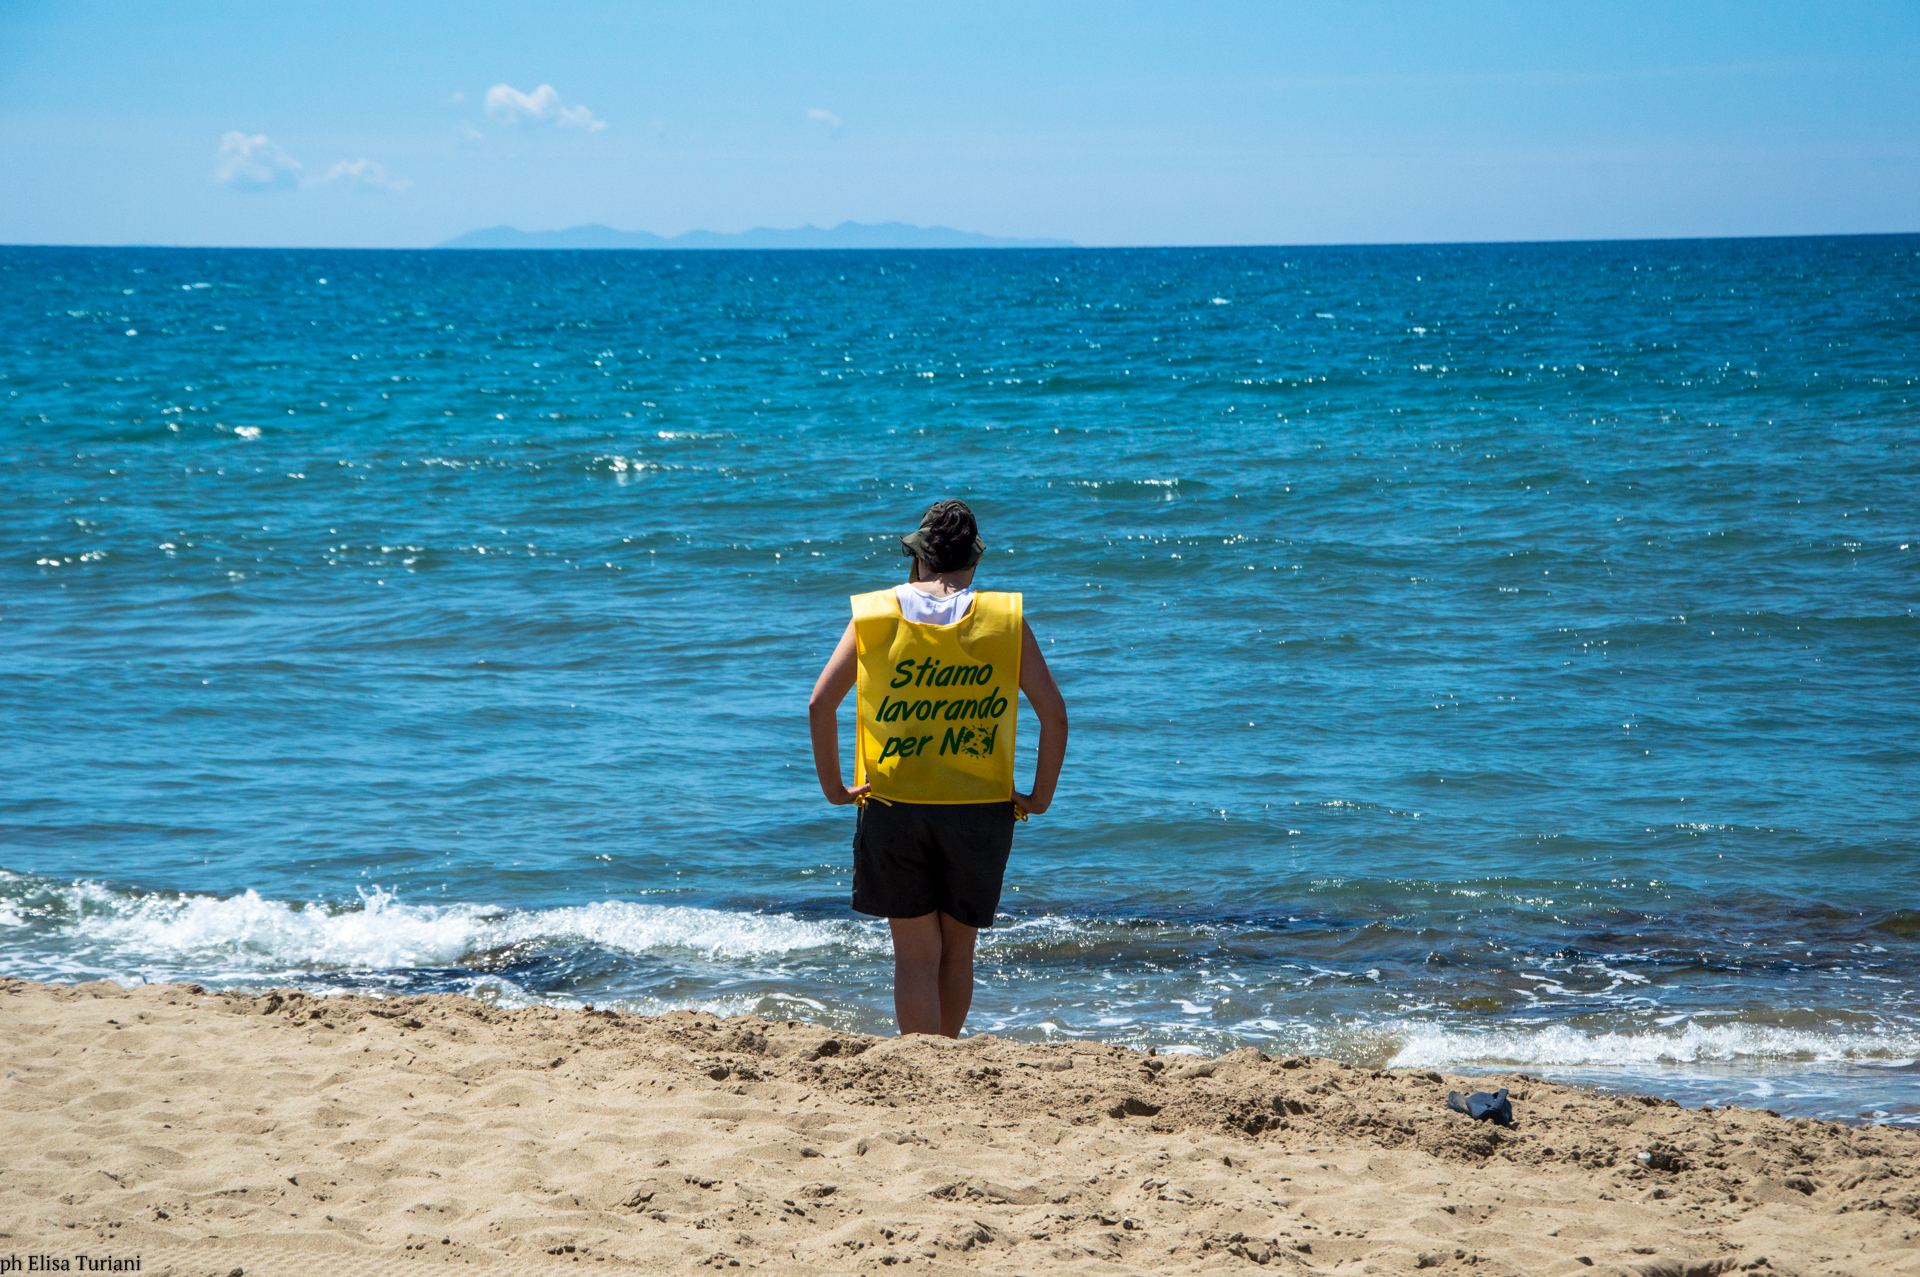 Una ragazza sulla spiaggia che guarda il mare con una pettorina con scritto "stiamo lavorando per noi"